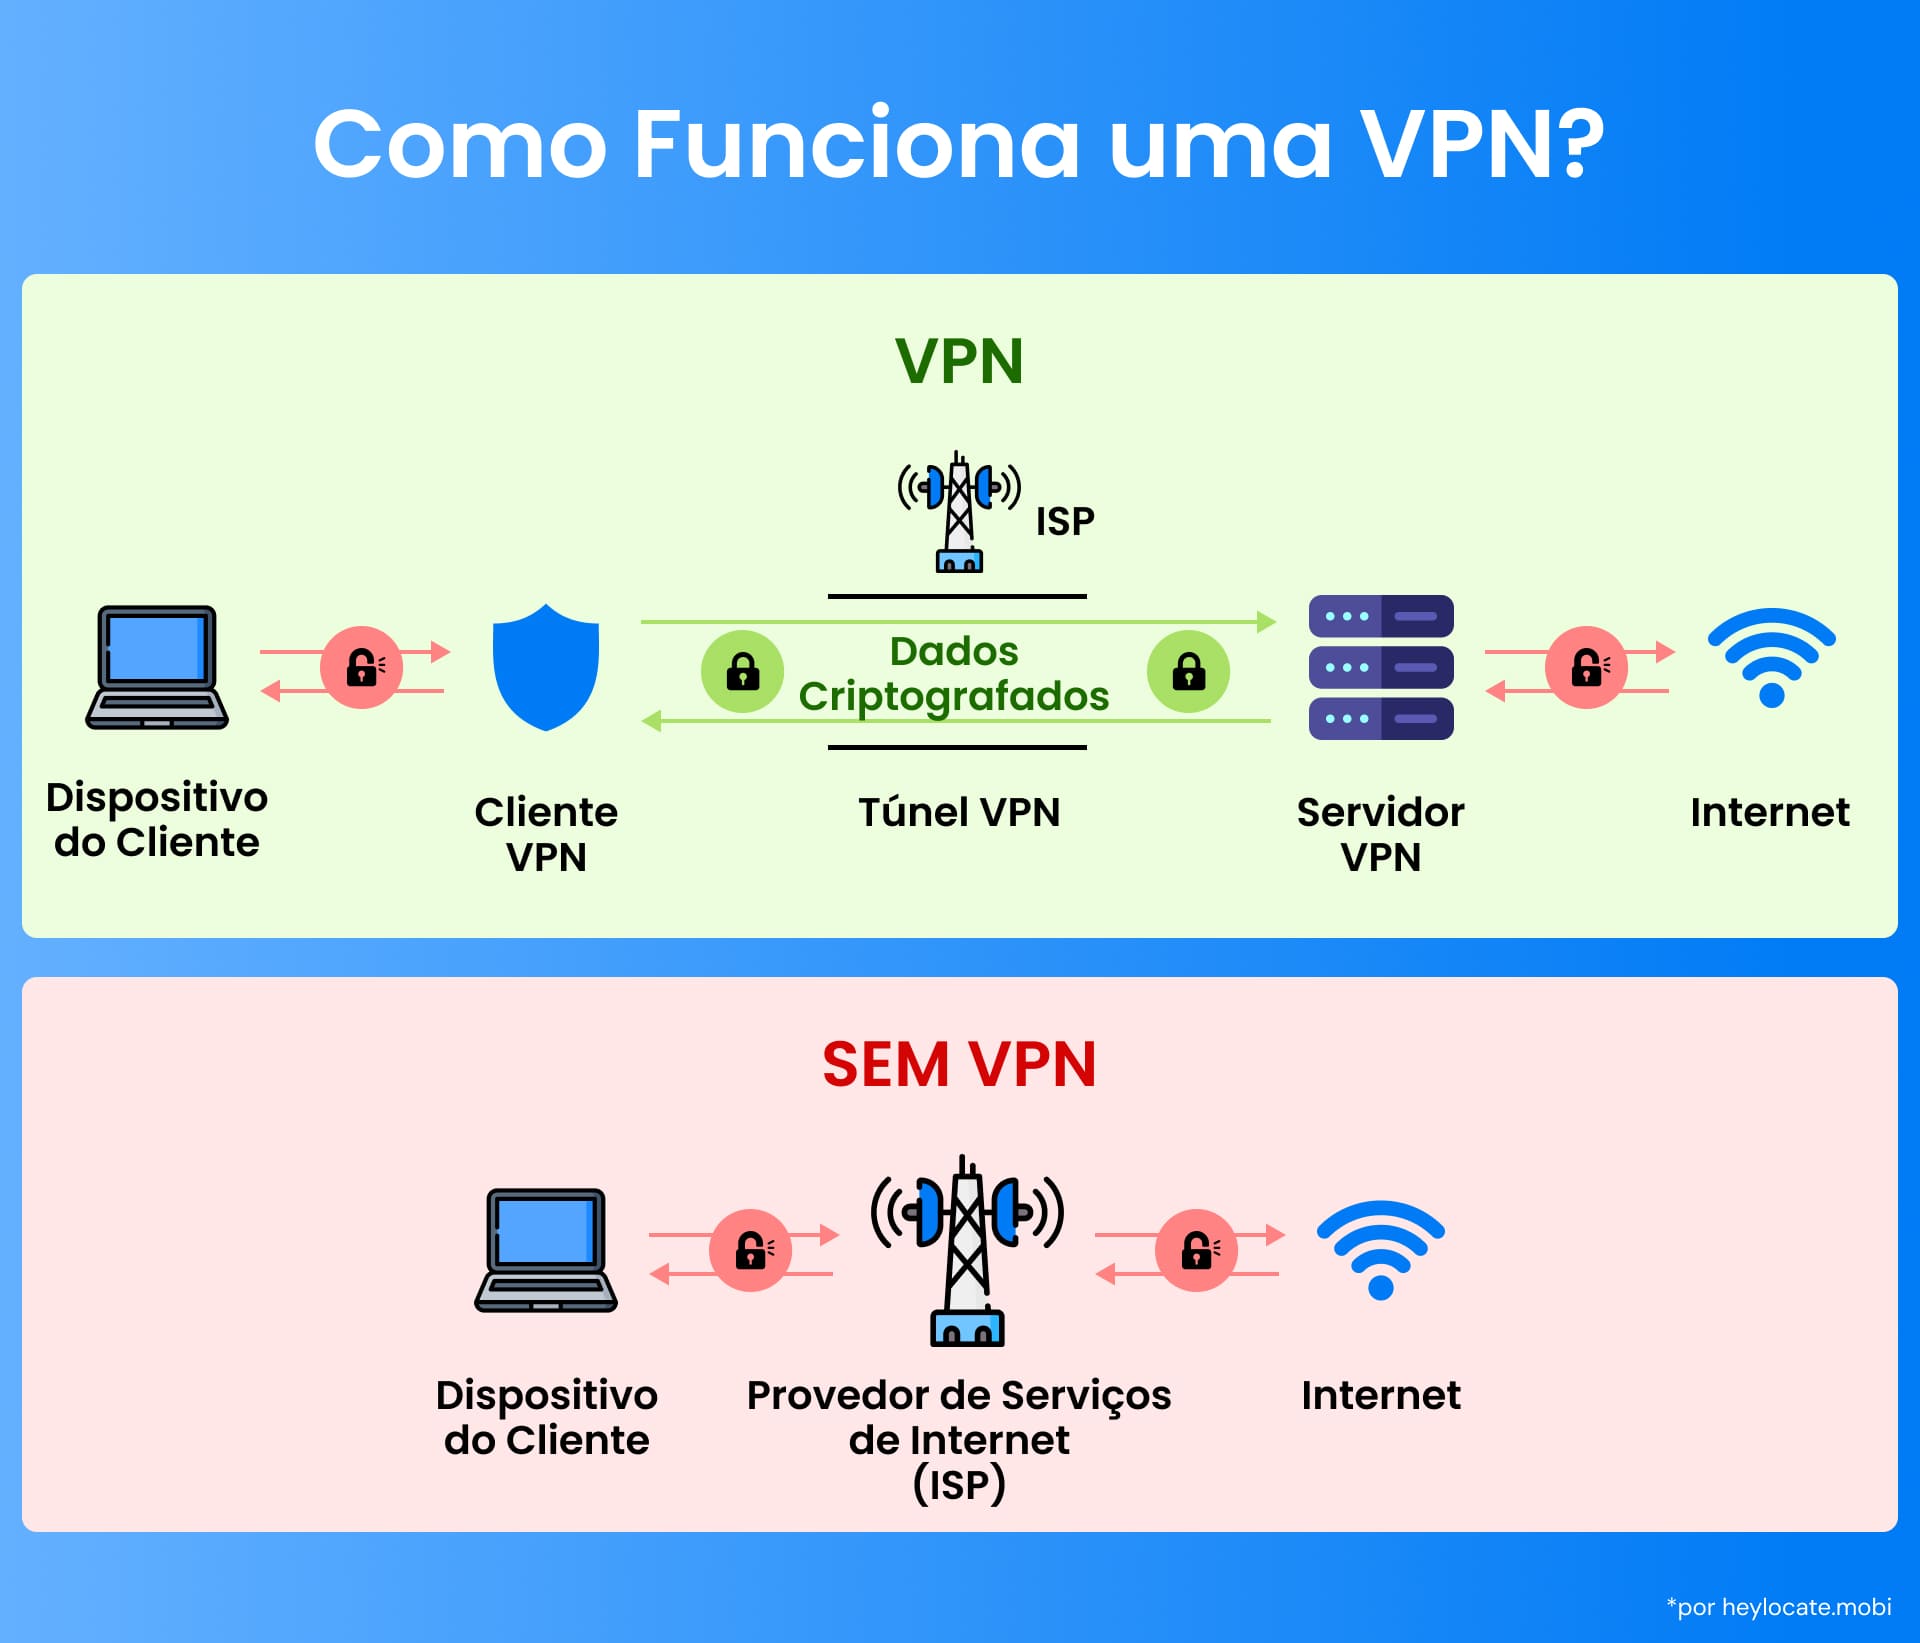 Infográfico mostrando a criptografia de dados e o processo de roteamento de uma VPN em comparação com uma conexão direta com a Internet